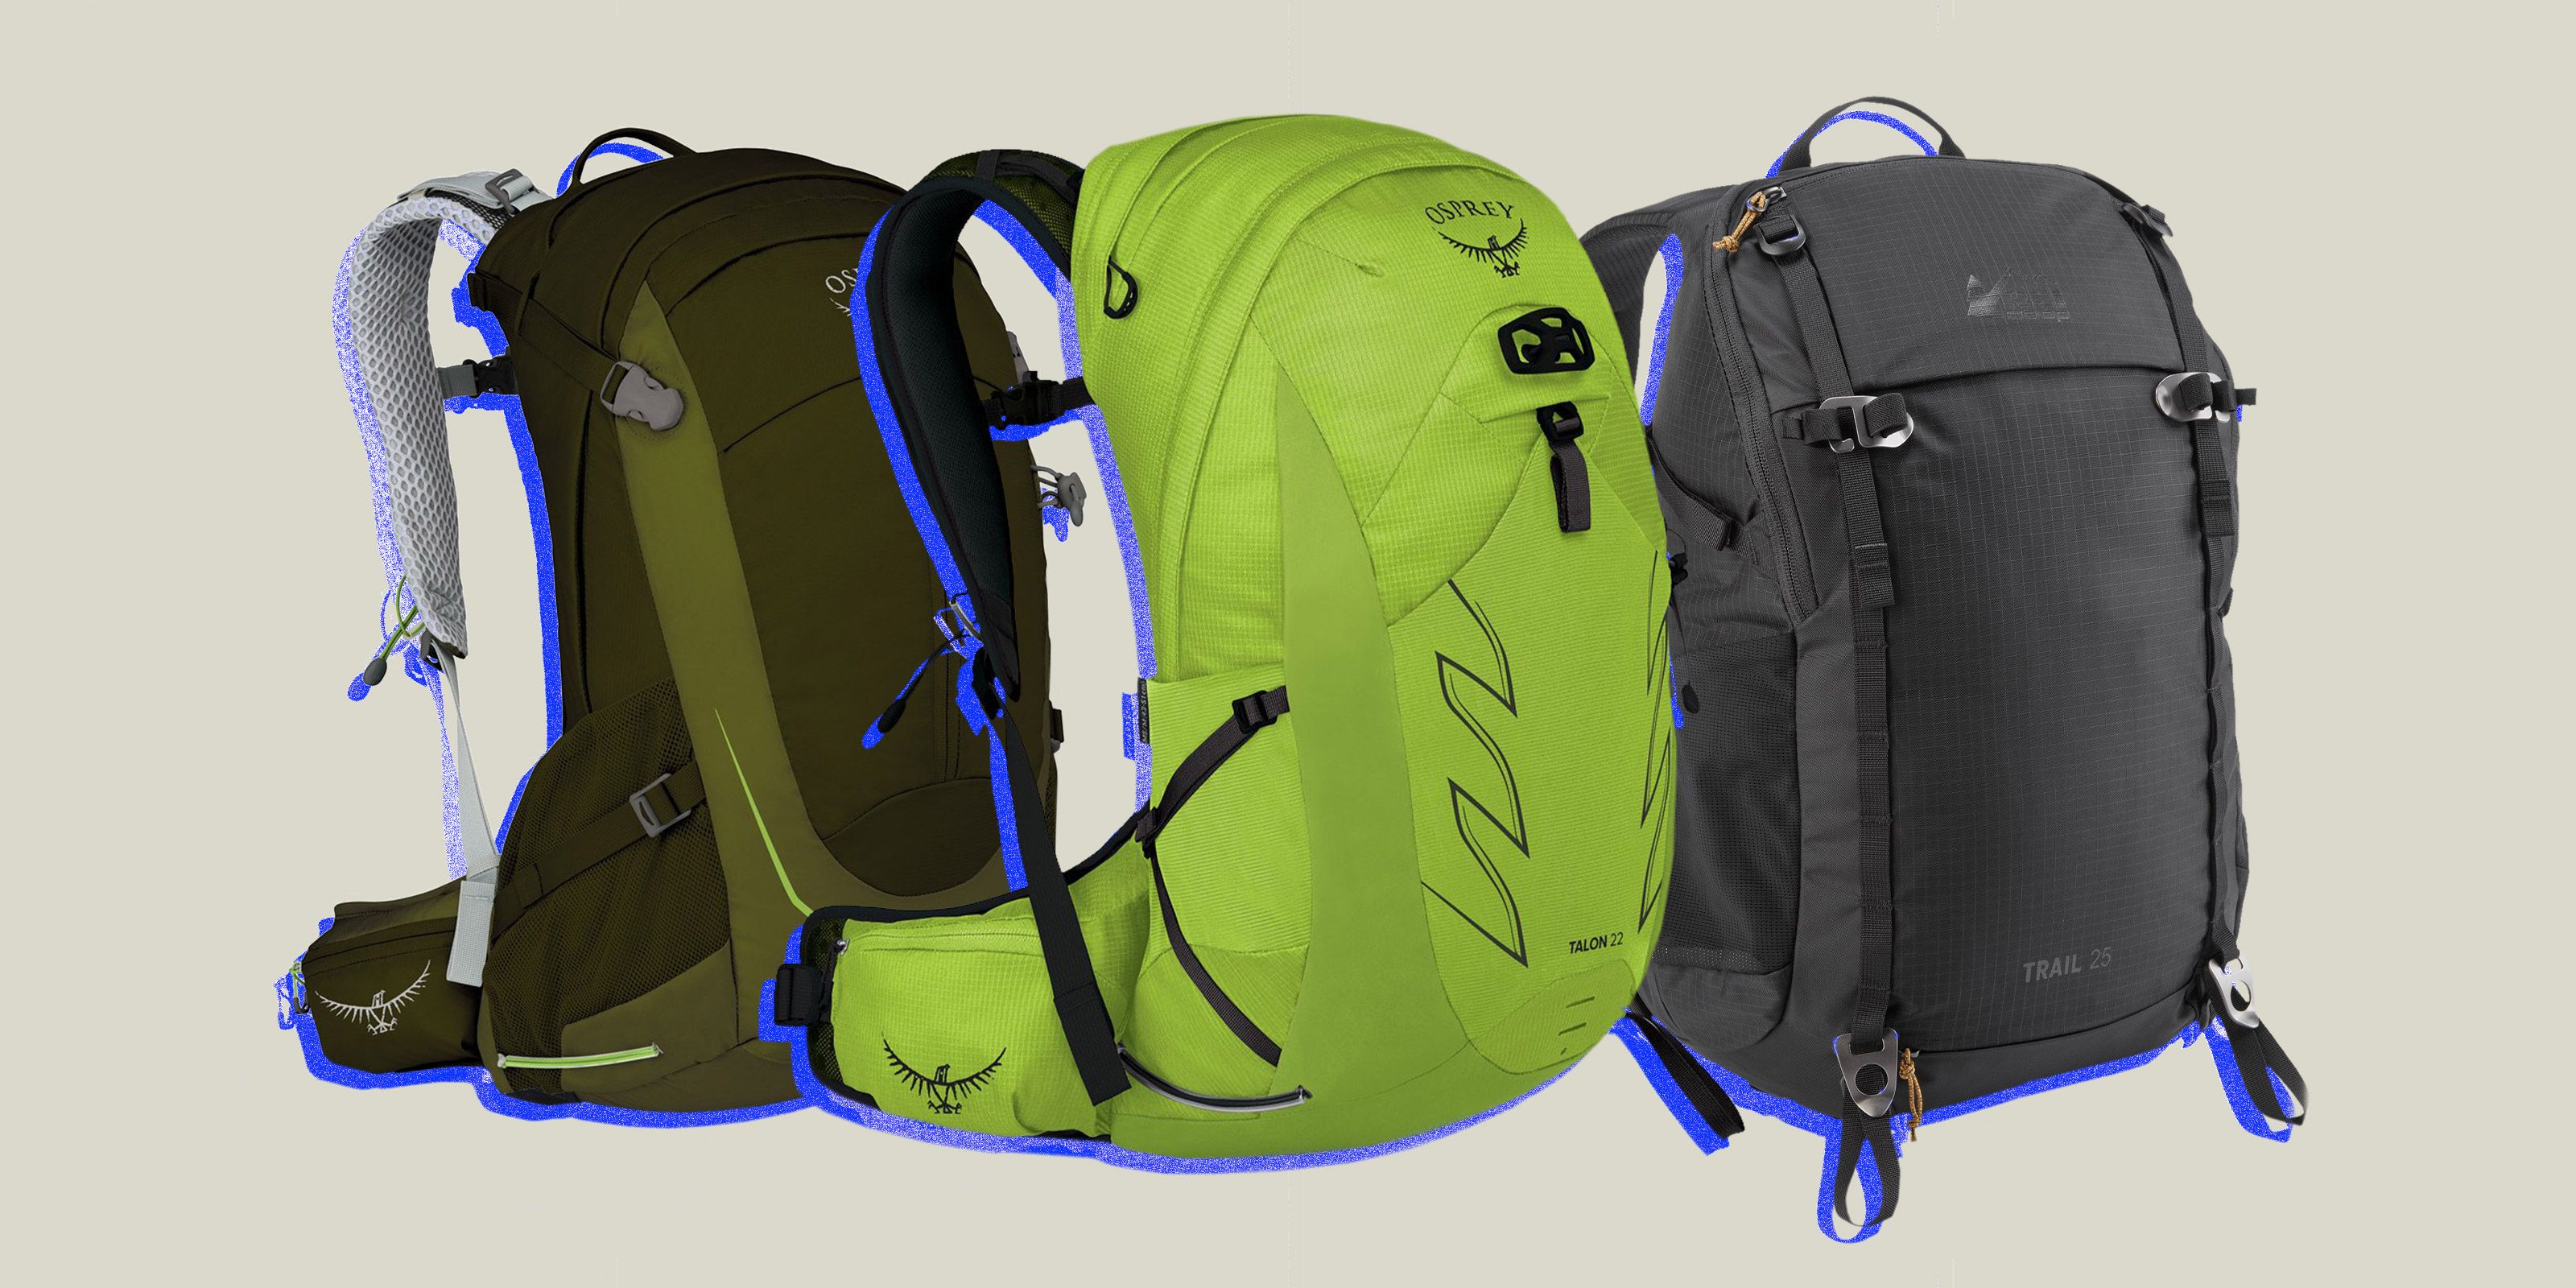 Trekking Bags Best Trekking Bags in India